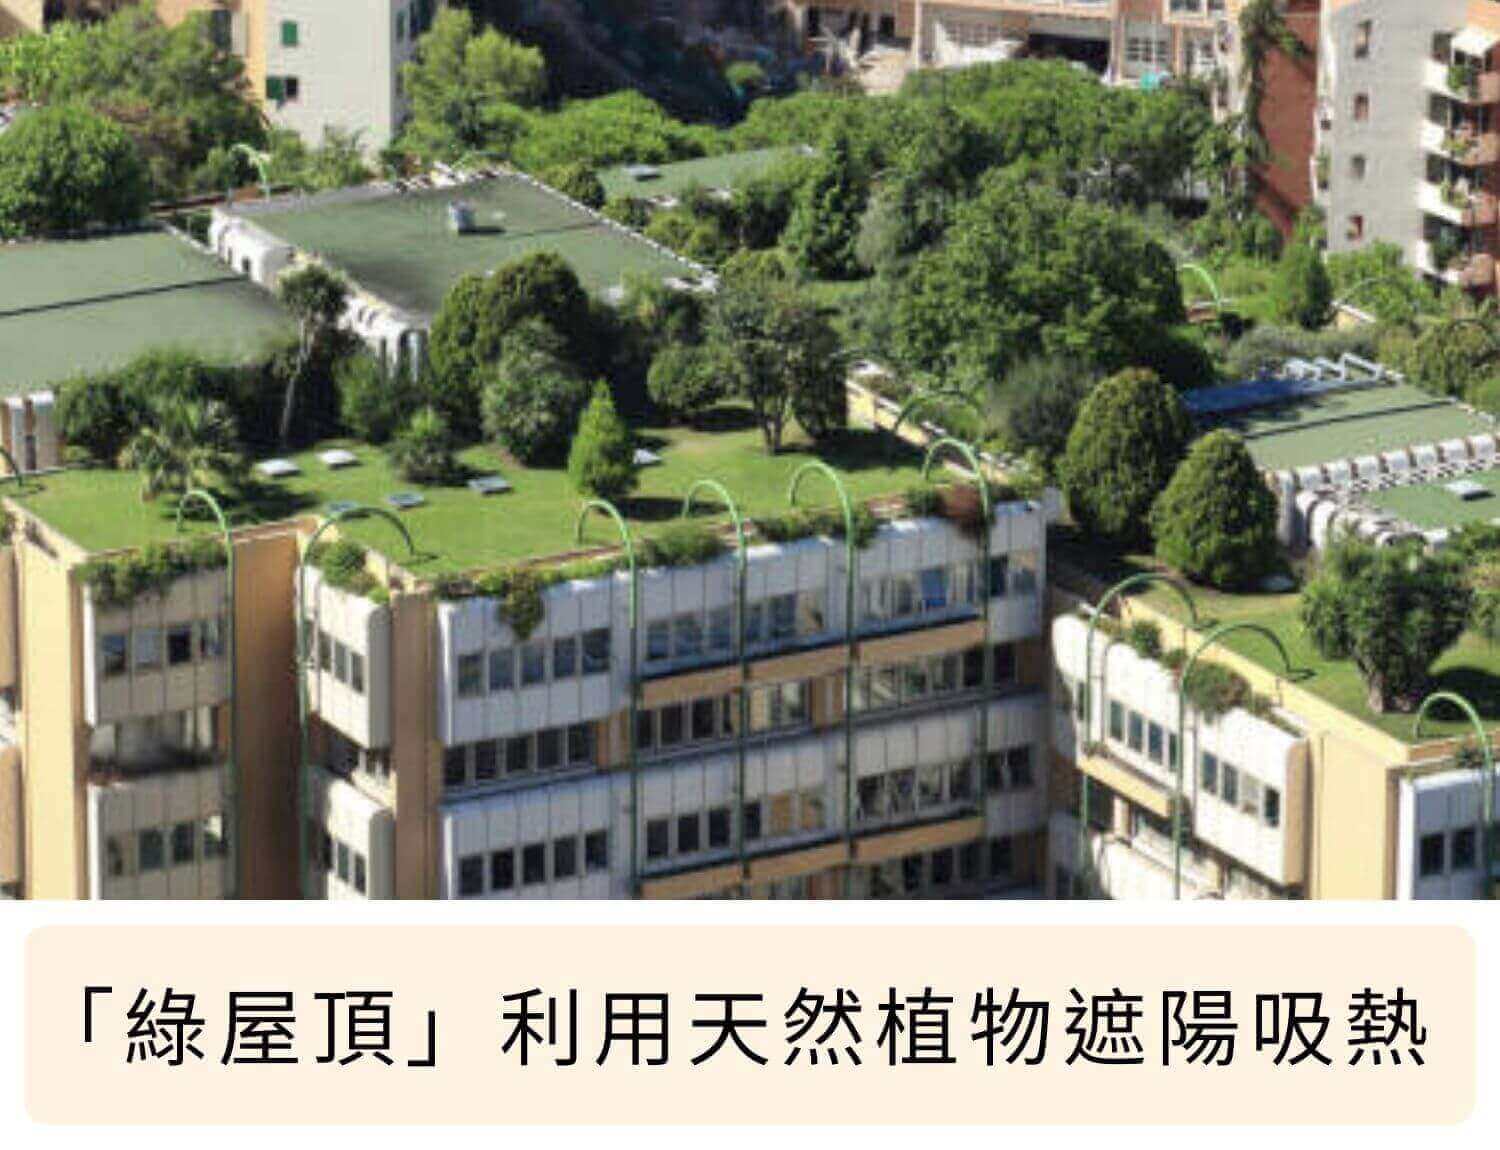 「綠屋頂」利用天然植物遮陽吸熱